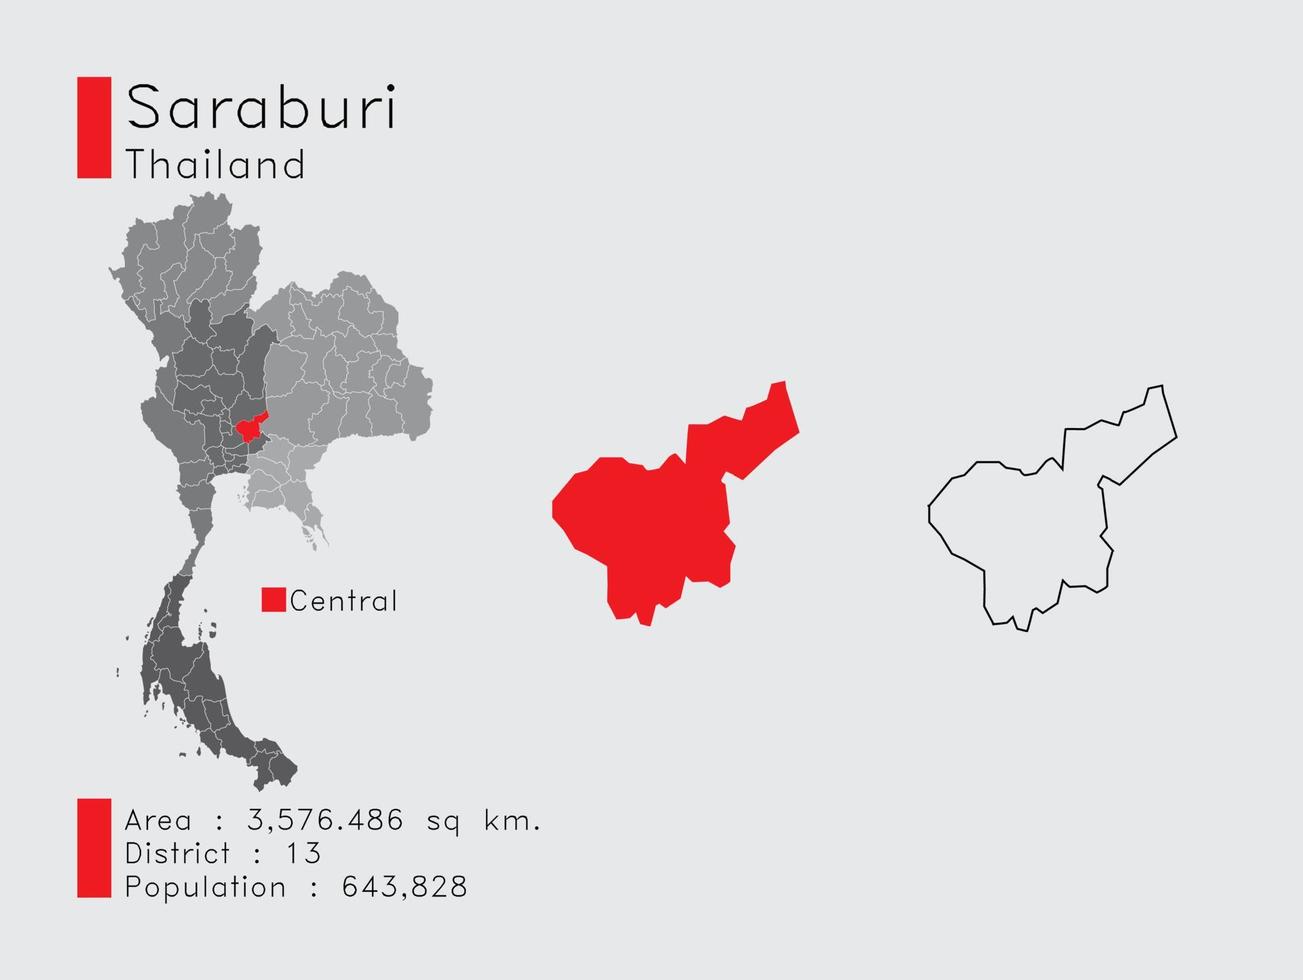 saraburi position in thailand eine reihe von infografikelementen für die provinz. und Bereich Bezirk Bevölkerung und Gliederung. Vektor mit grauem Hintergrund.